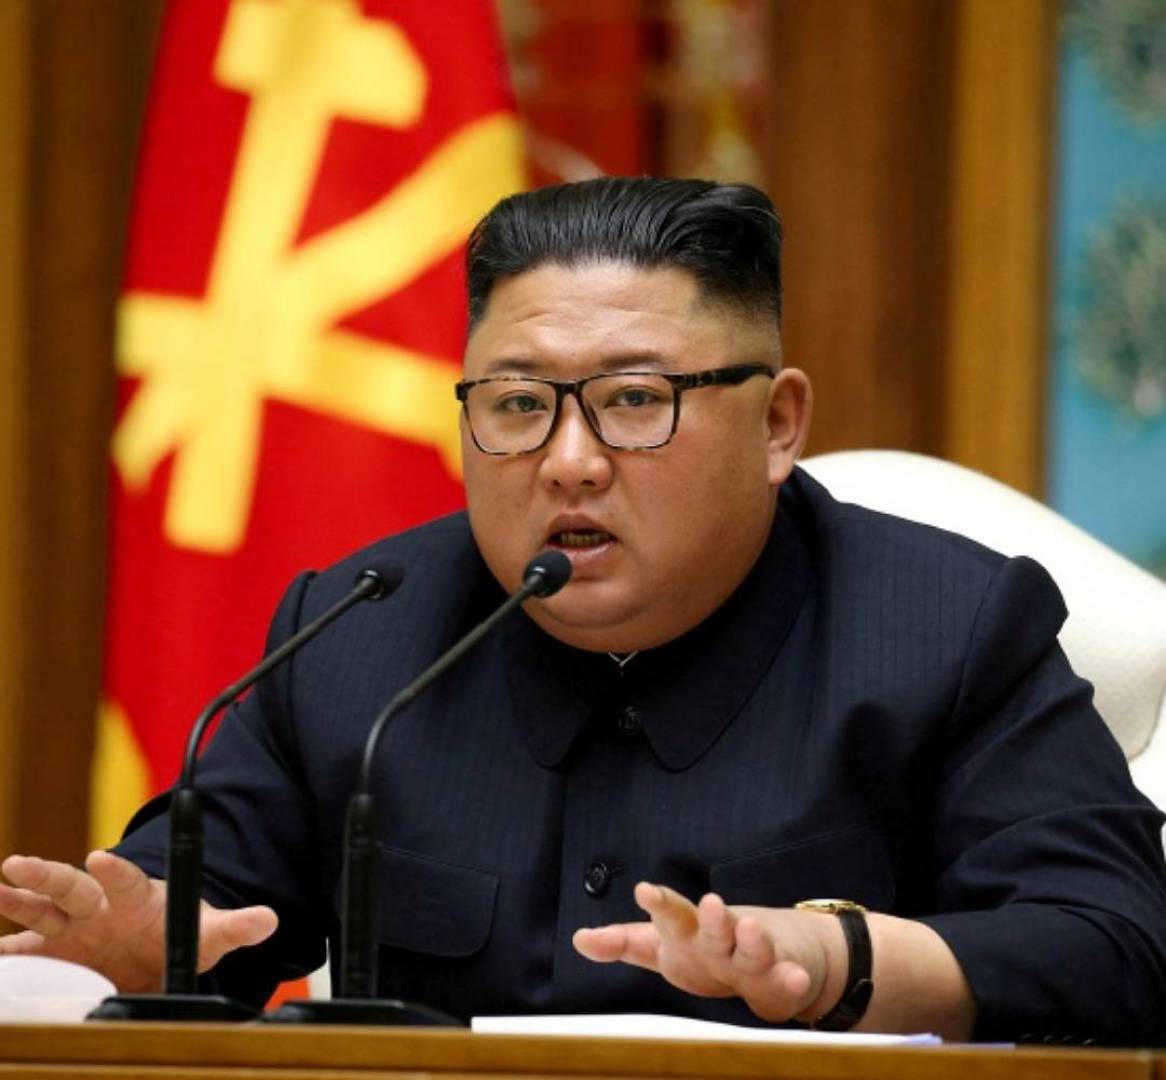 كوريا الشمالية تحذر من تشكيل “ناتو” جديد بآسيا..